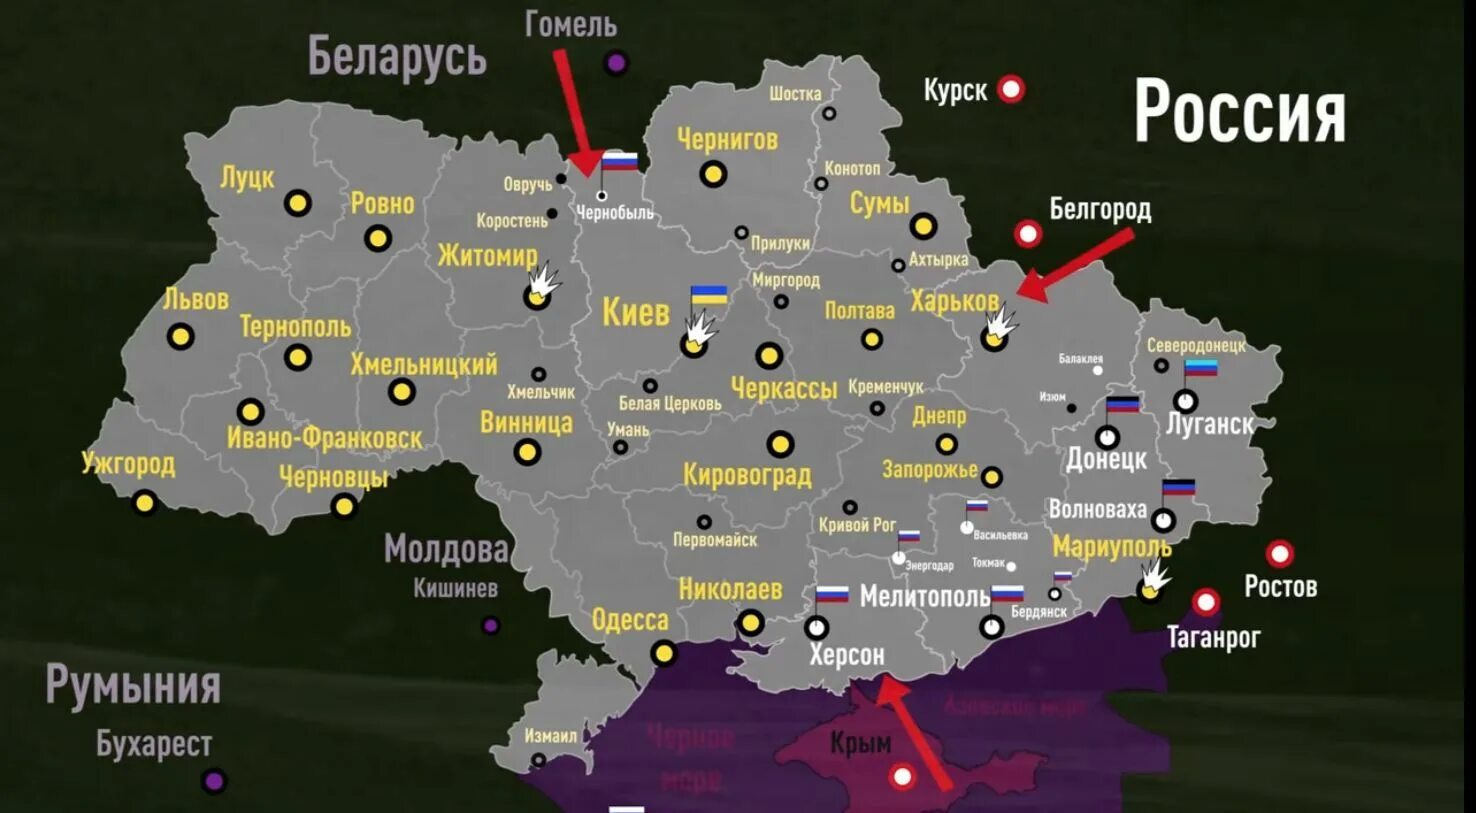 Тг каналы про украину. Карта Украины. Донбасс на карте. Карта спецоперации на Украине.